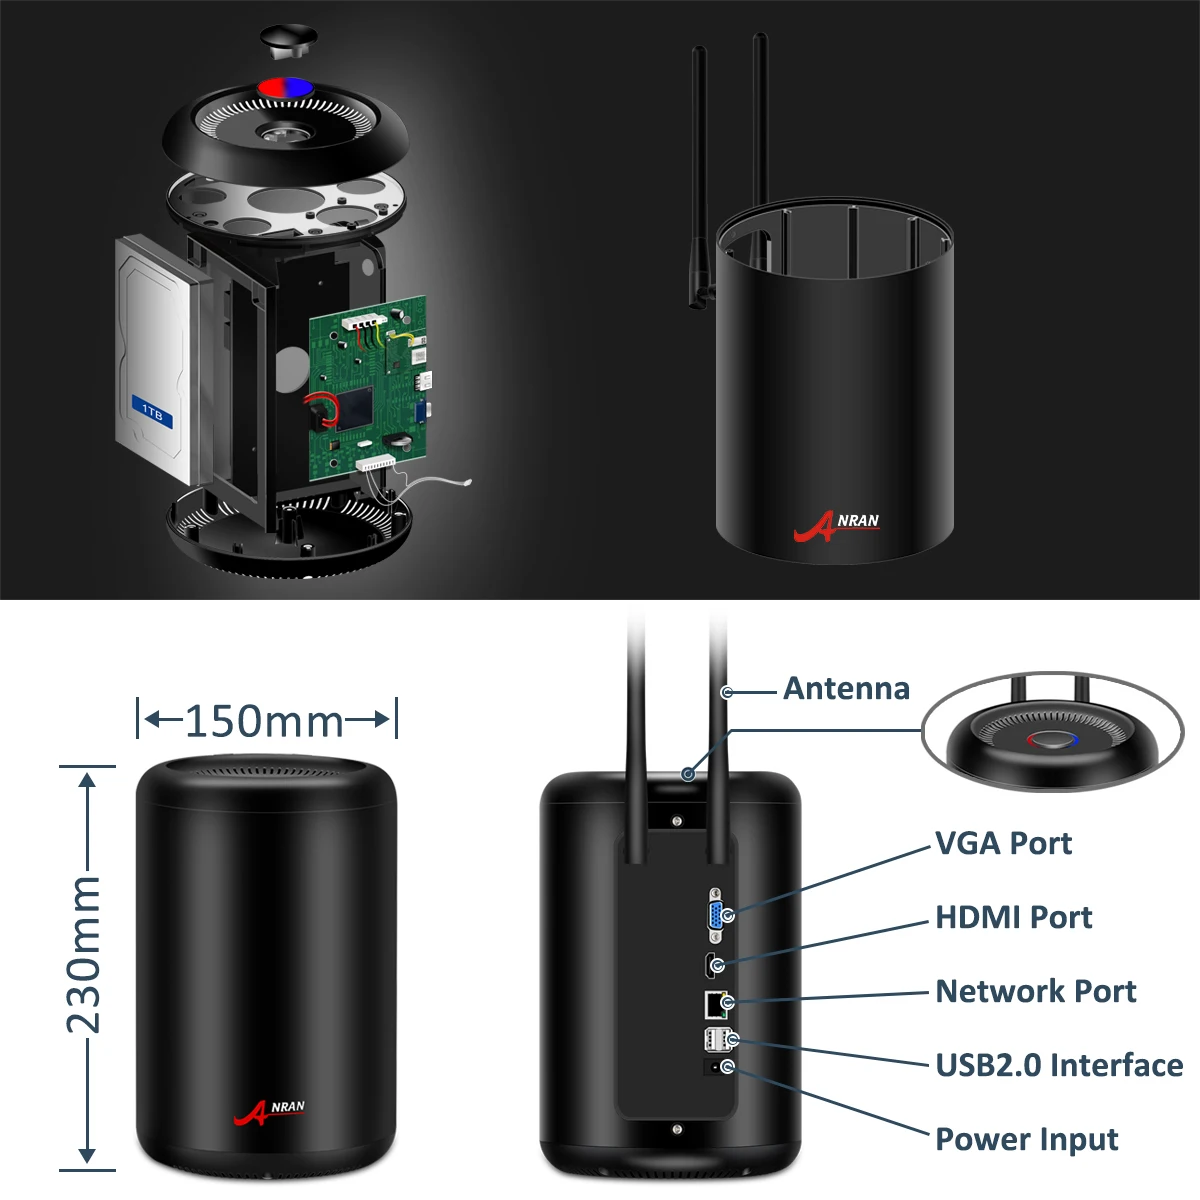 ANRAN1080P HD Wi-Fi камера системы безопасности 2MP 8 CH NVR набор беспроводная домашняя камера видеонаблюдения система в помещении и на открытом воздухе IP камера